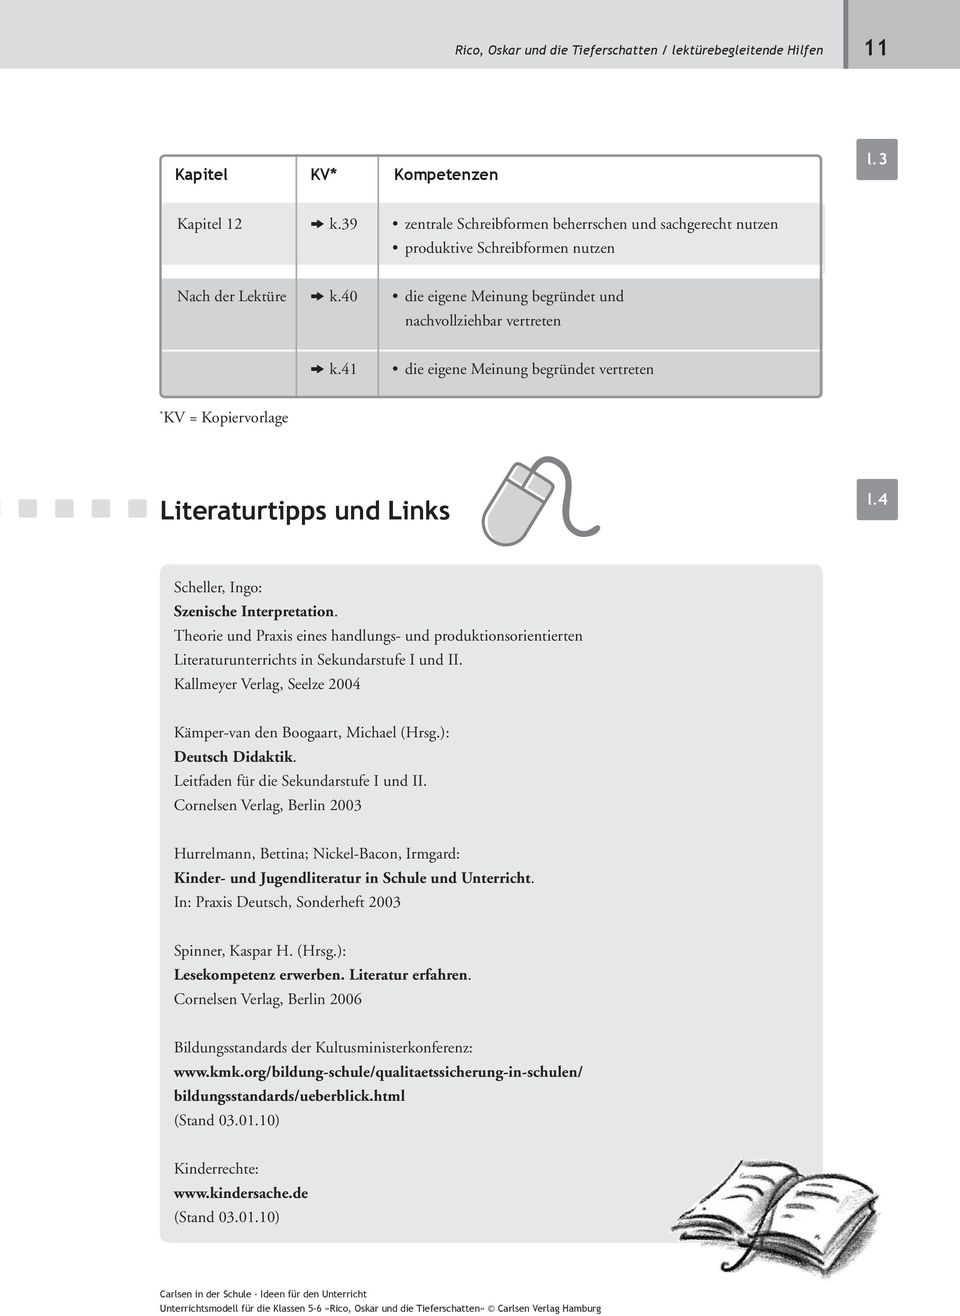 41 die eigene Meinung begründet vertreten * KV = Kopiervorlage Literaturtipps und Links Scheller, Ingo: Szenische Interpretation.